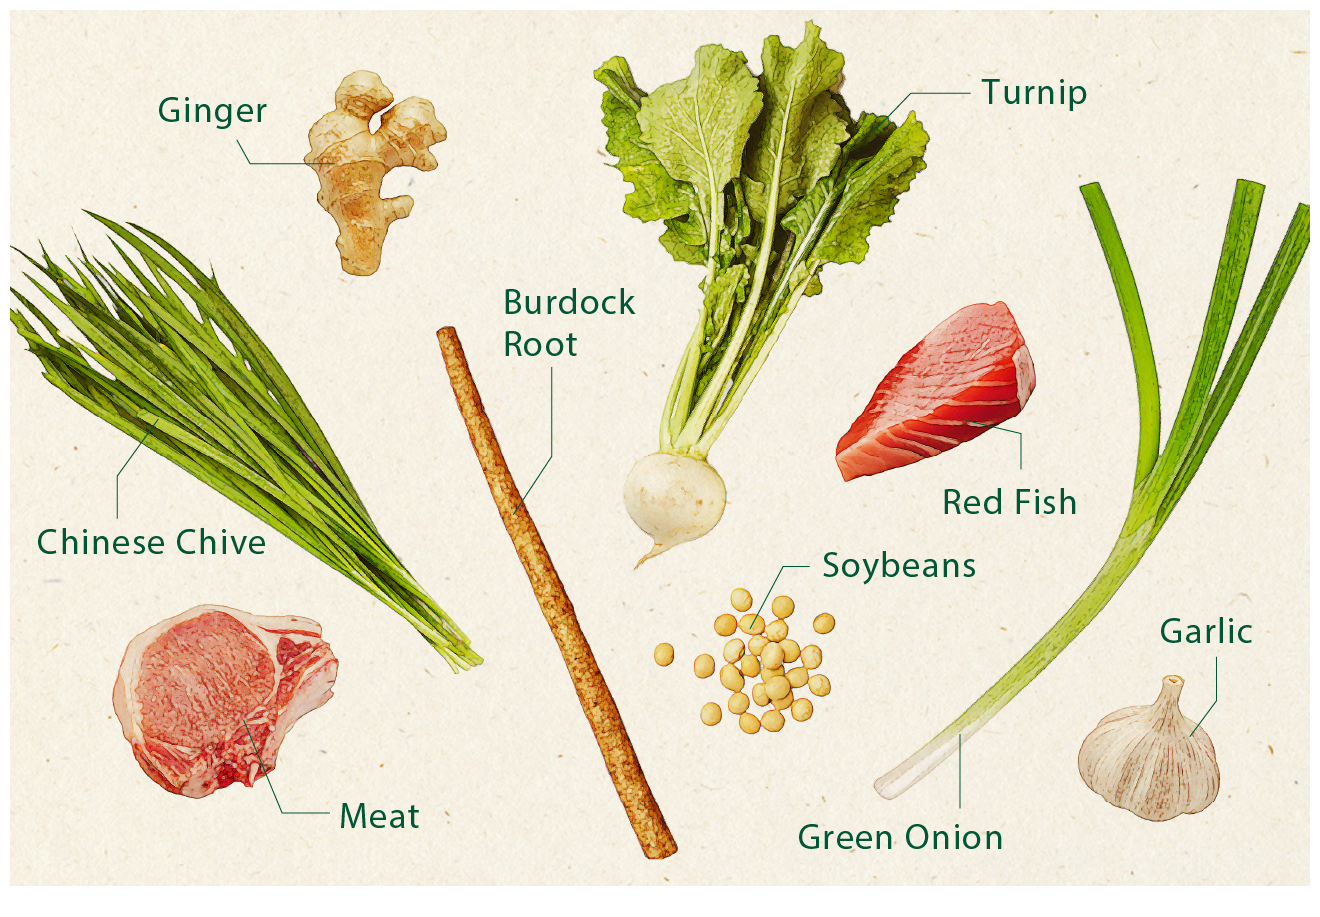 かぶ、レンコン、ごぼうなどの根菜類。また、生姜、ニンニク、ニラ、ネギなどの香味野菜も体を温めてくれます